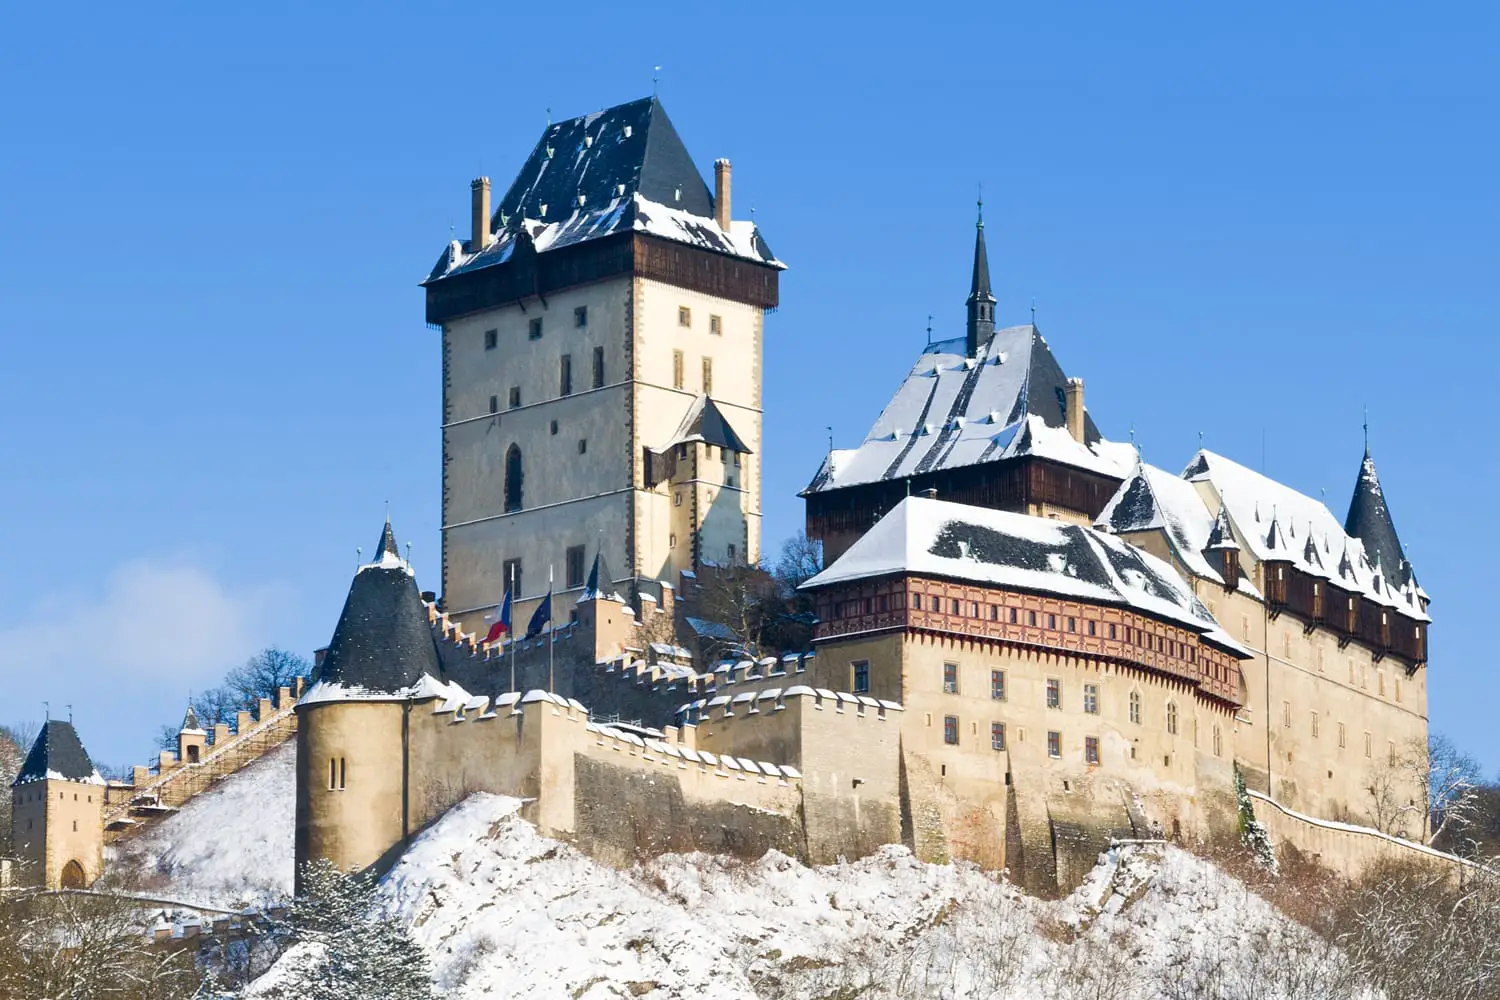 μεσαιωνικό βασιλικό γοτθικό κάστρο Karlstejn κοντά στην Πράγα, Κεντρική Βοημία, Τσεχική Δημοκρατία, Ευρώπη